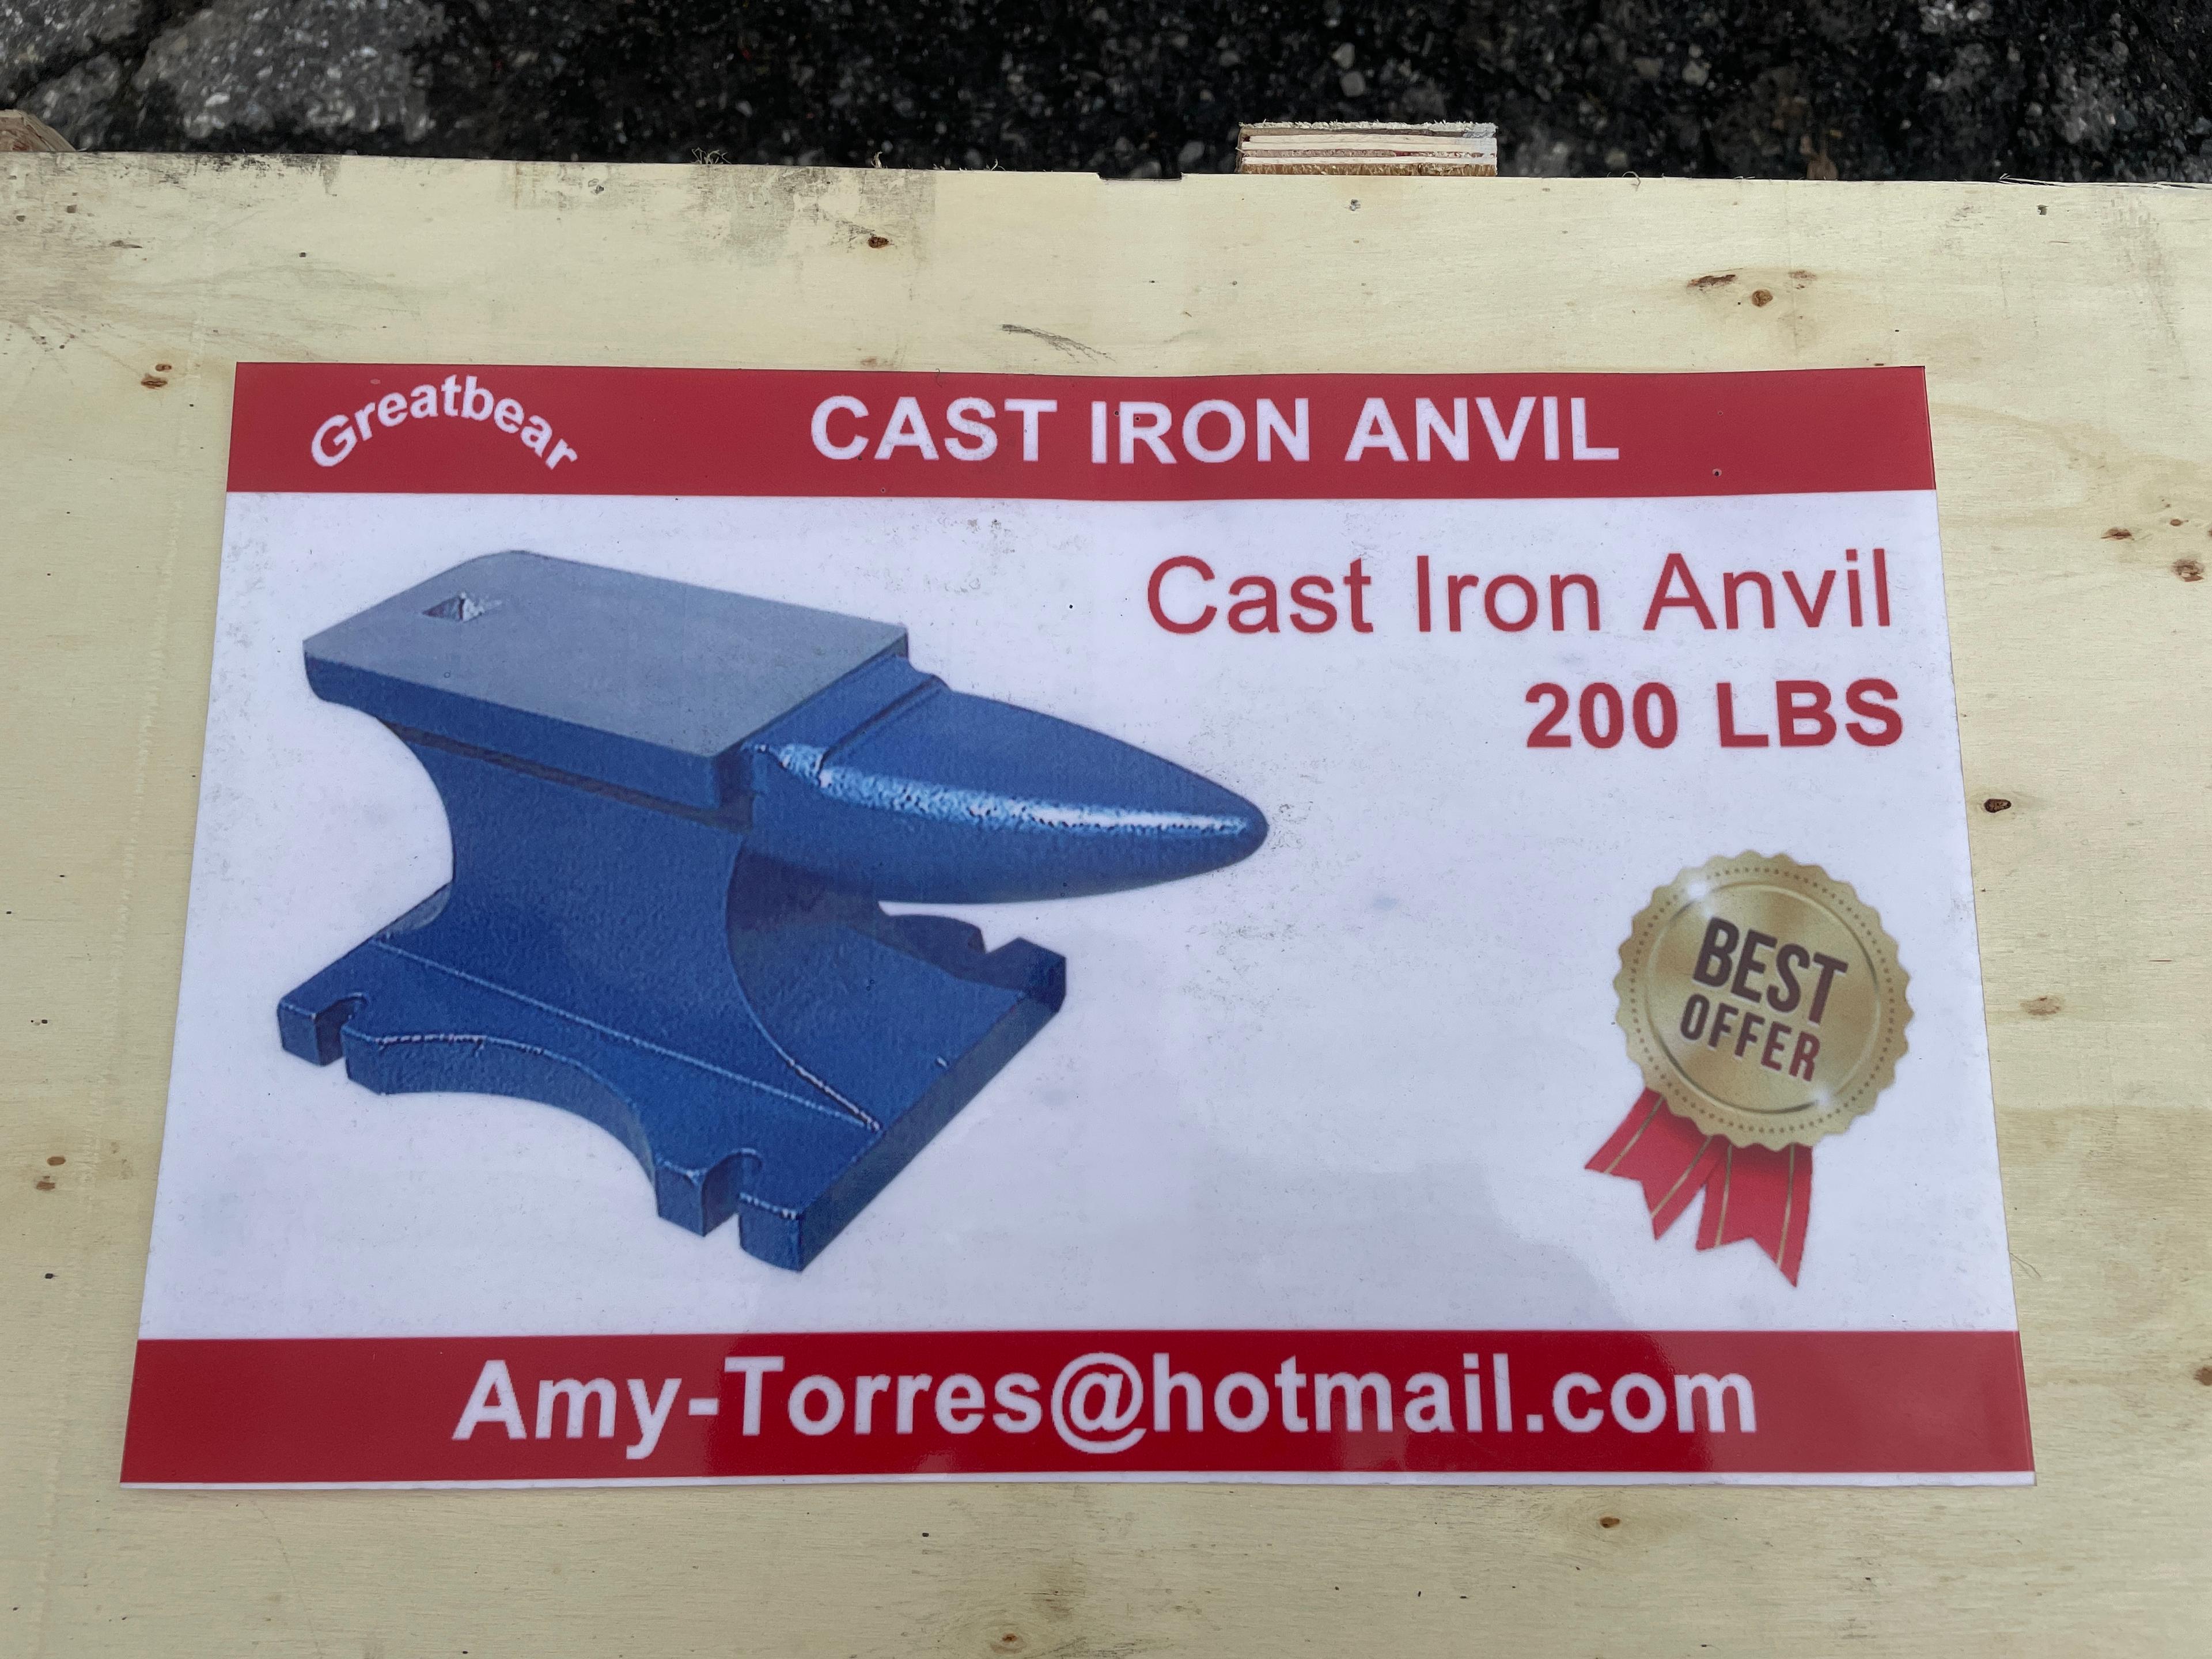 New Great Bear 200 IB Cast Iron Anvil